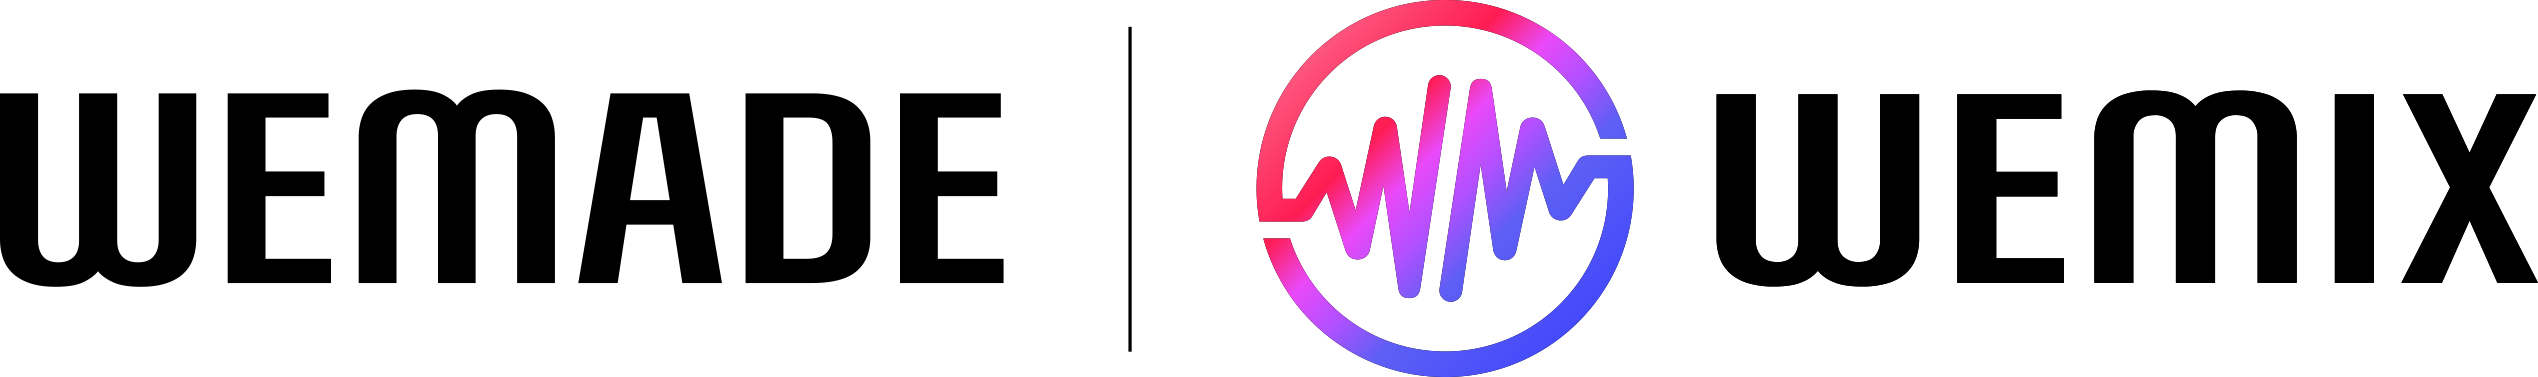 Verichains joins WEMIX3.0 Mainnet’s “40 WONDERS” Node Council Partners as WONDER 12